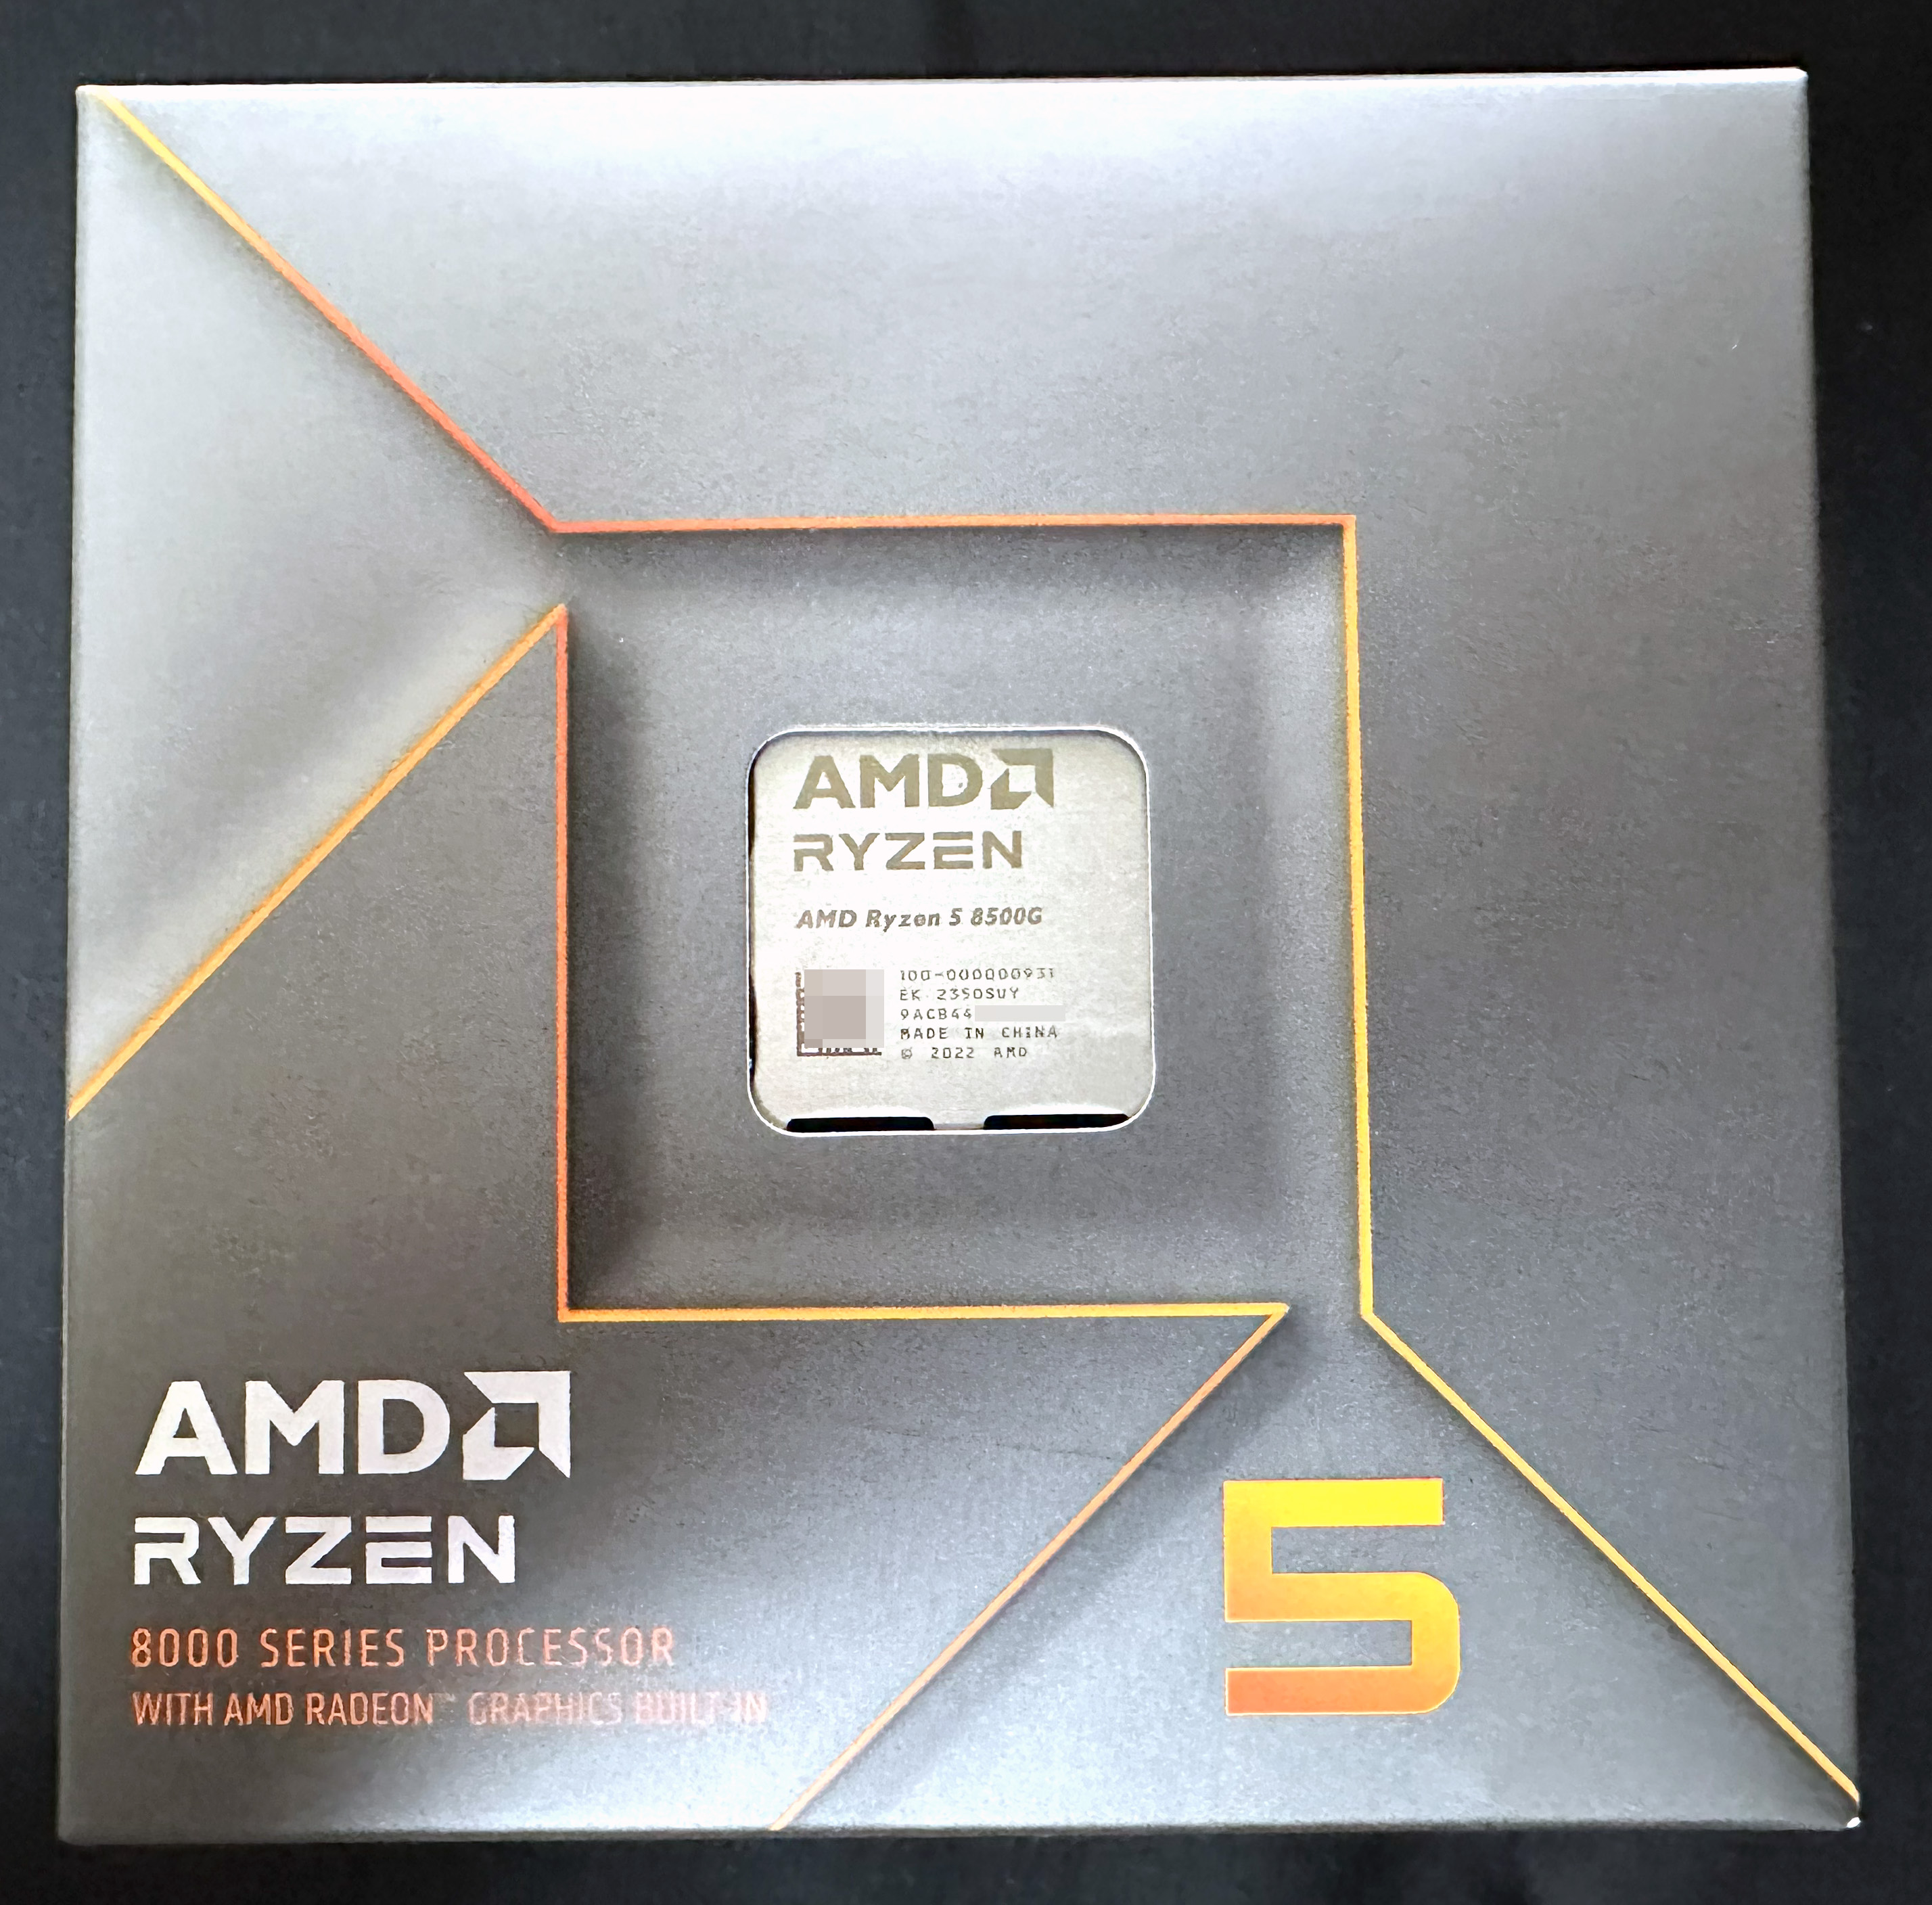 AMD Ryzen 5 8500G (100-000000931) Package